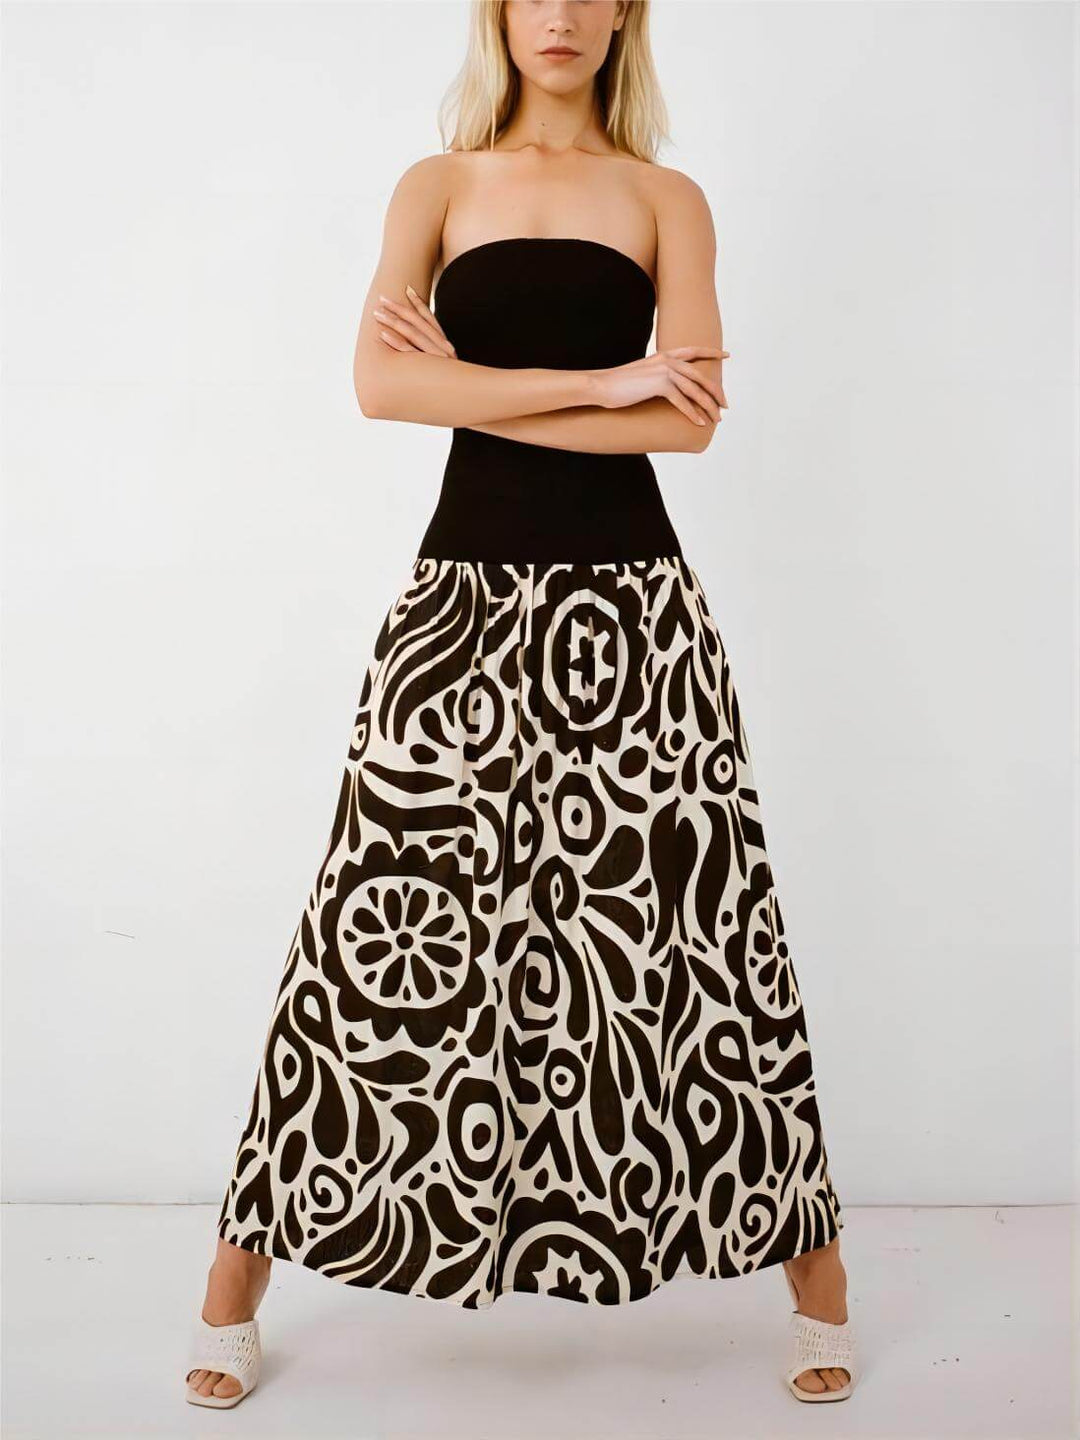 Modna sukienka midi bez ramiączek w kwiatowy print